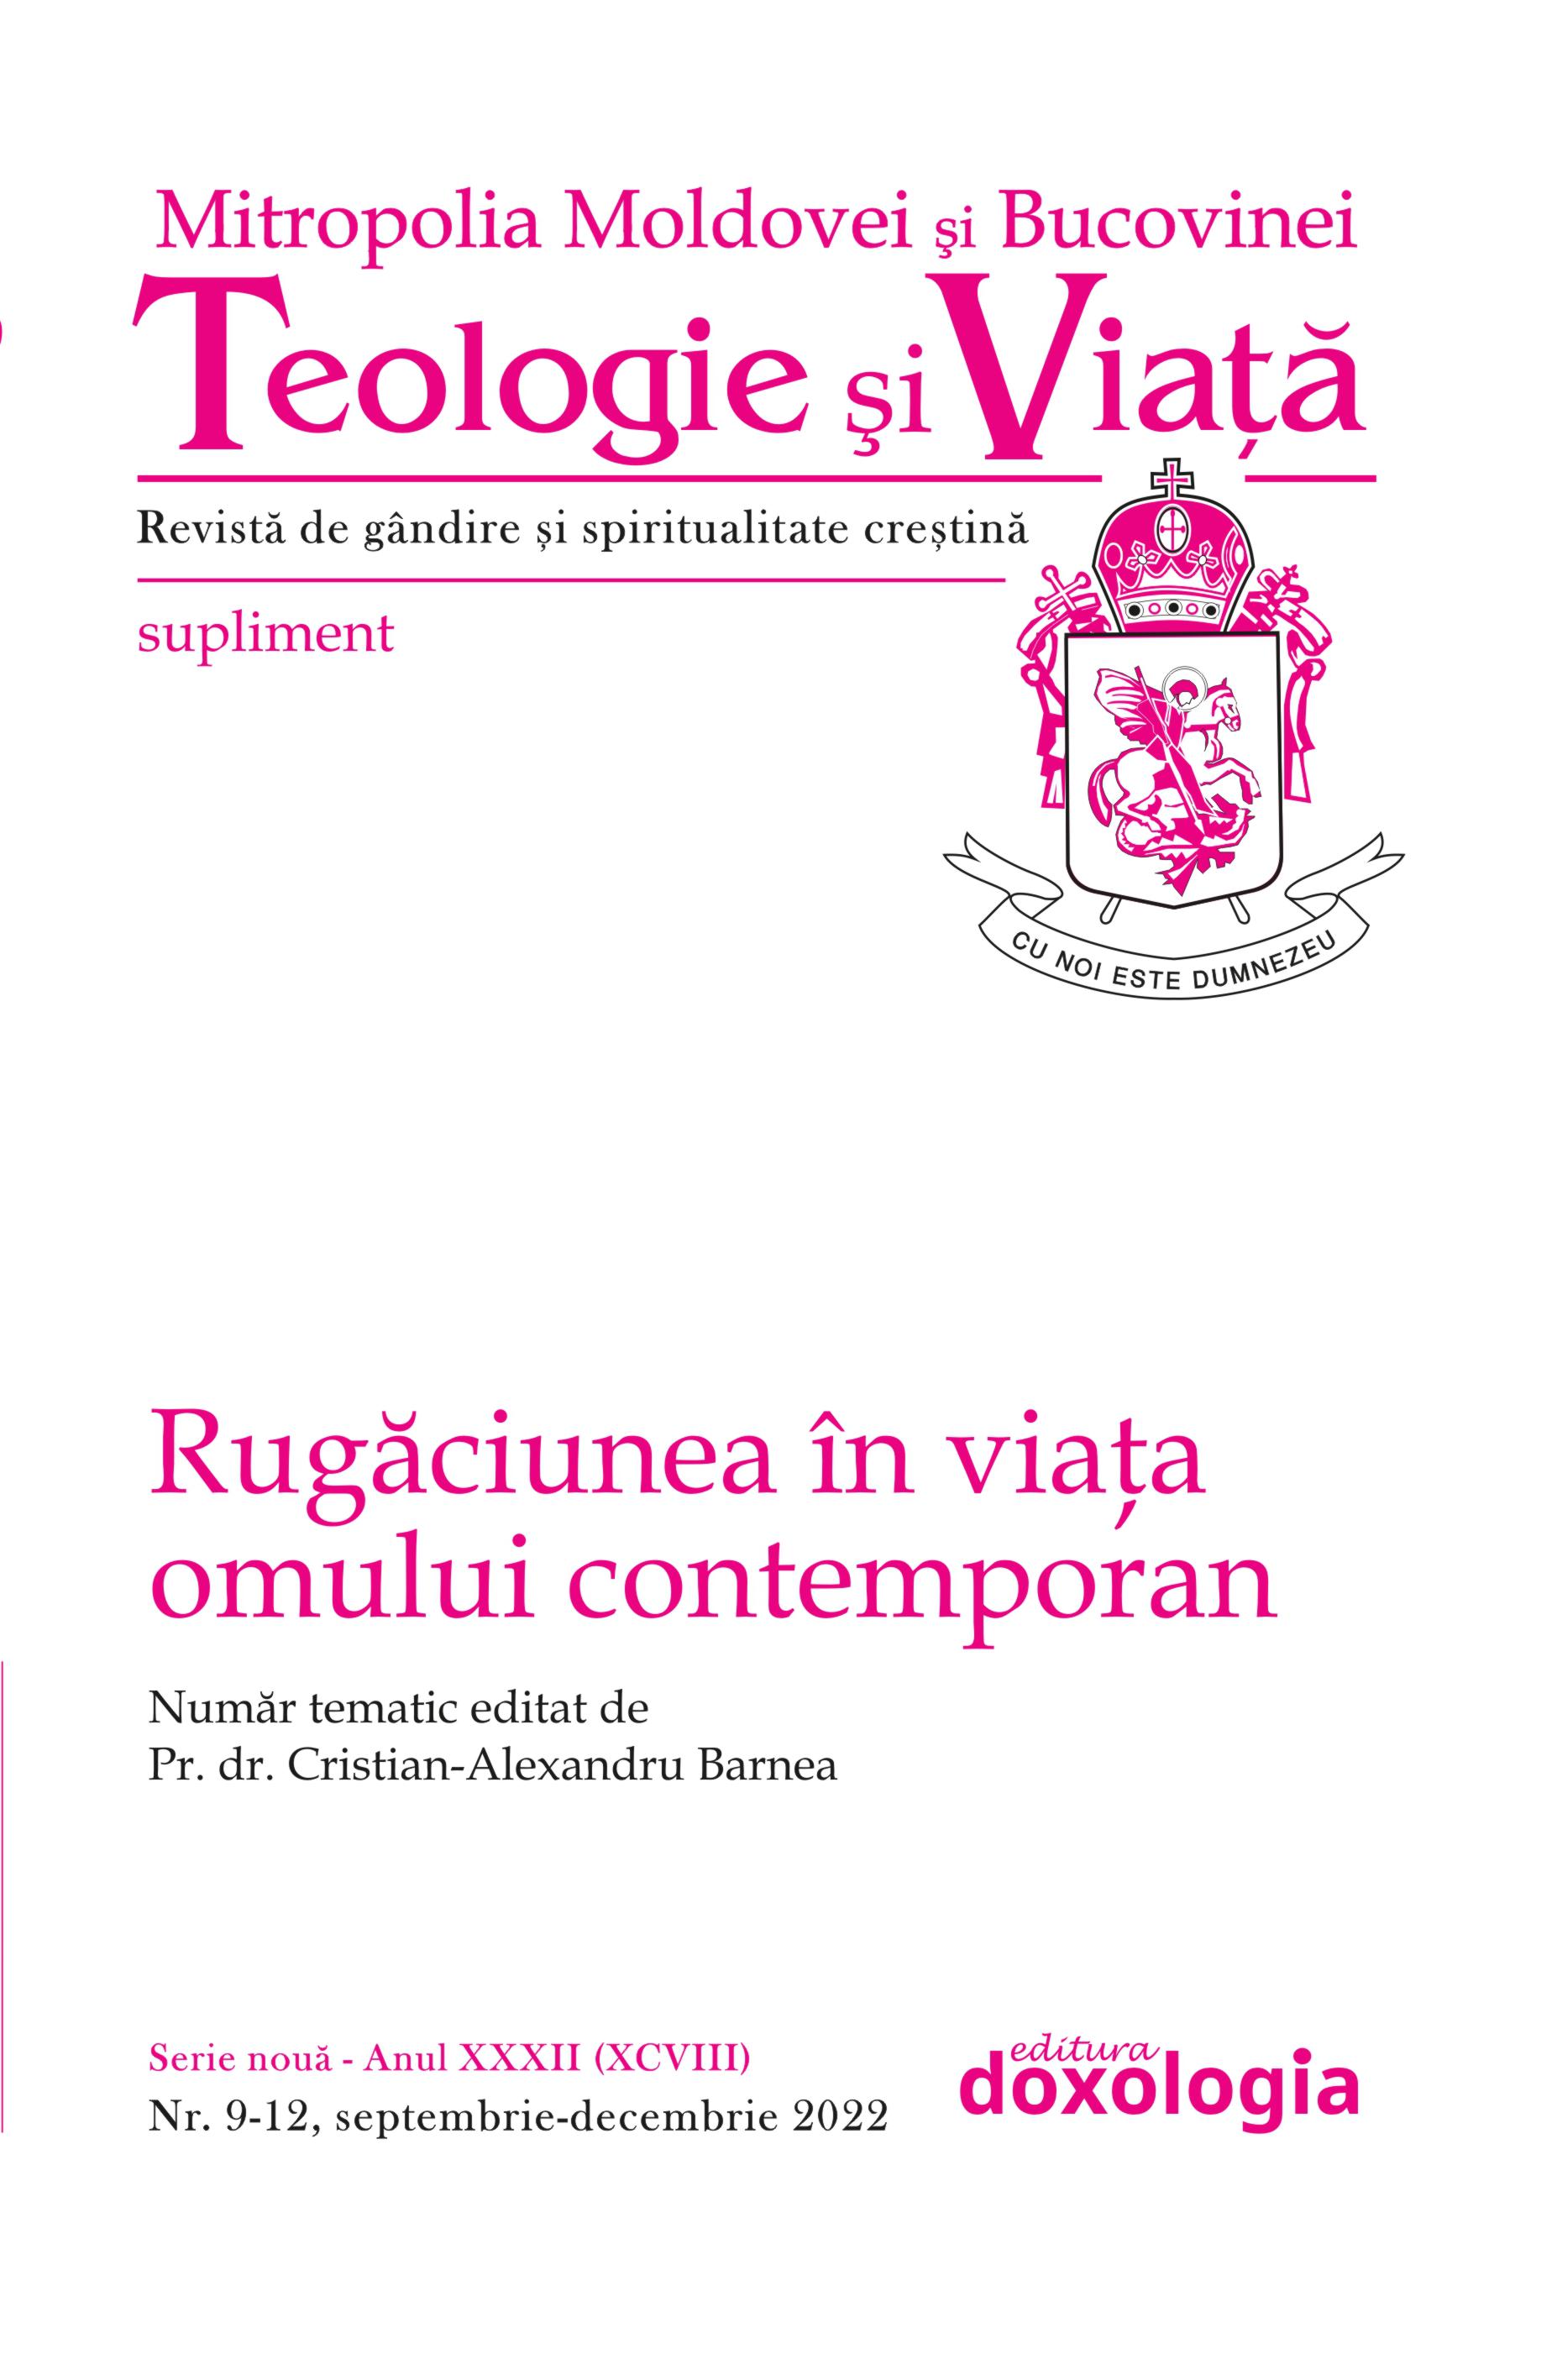 Father Professor Dumitru Stăniloae — a Man of Prayer and Philocalic Living Cover Image